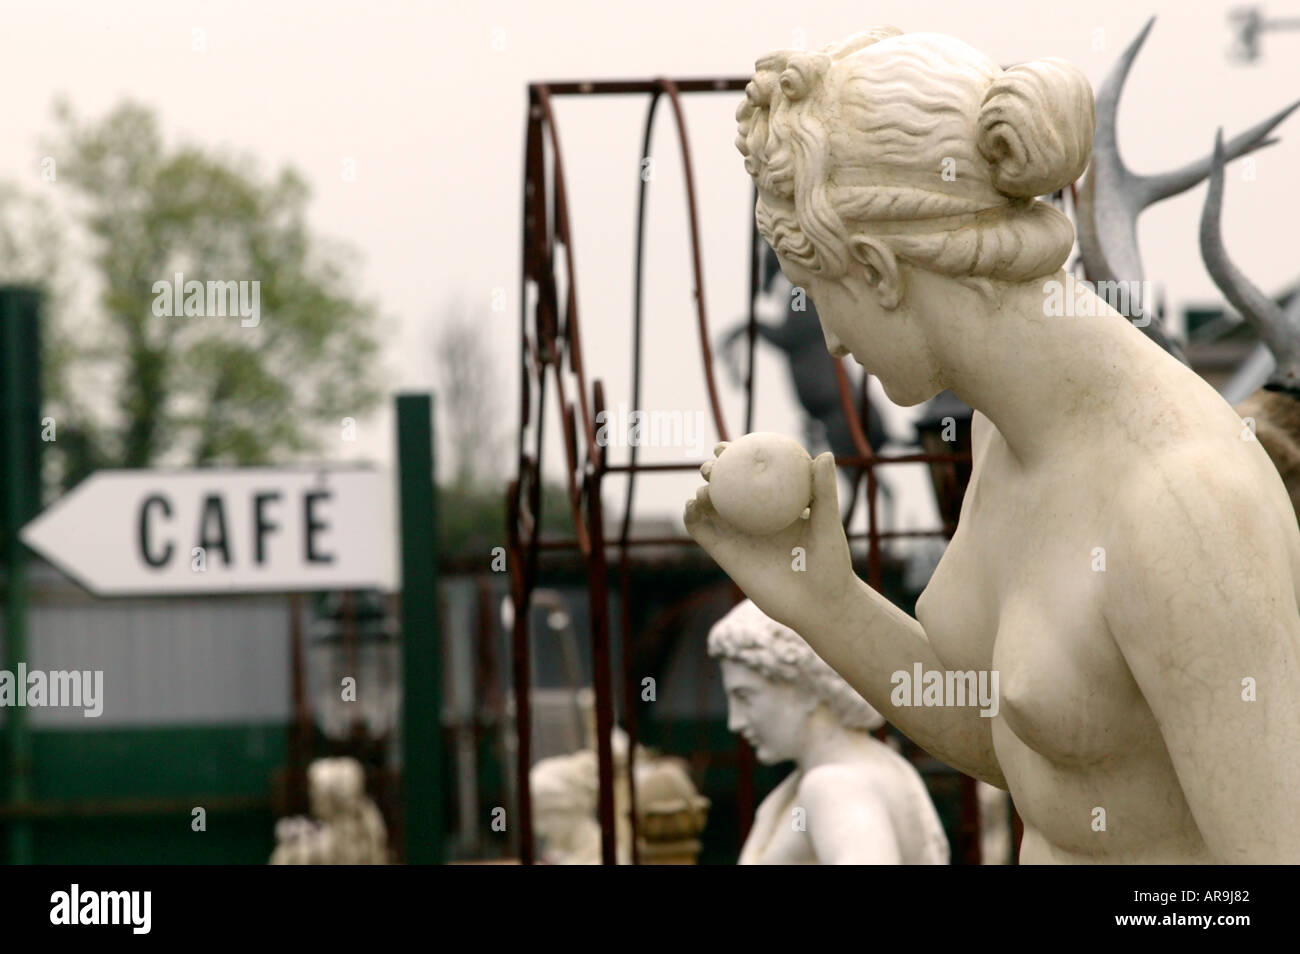 Statua di pietra di sostegno femmina cerca apple presso il cafe segno a solopark costruzione cantiere dei materiali di consumo Foto Stock